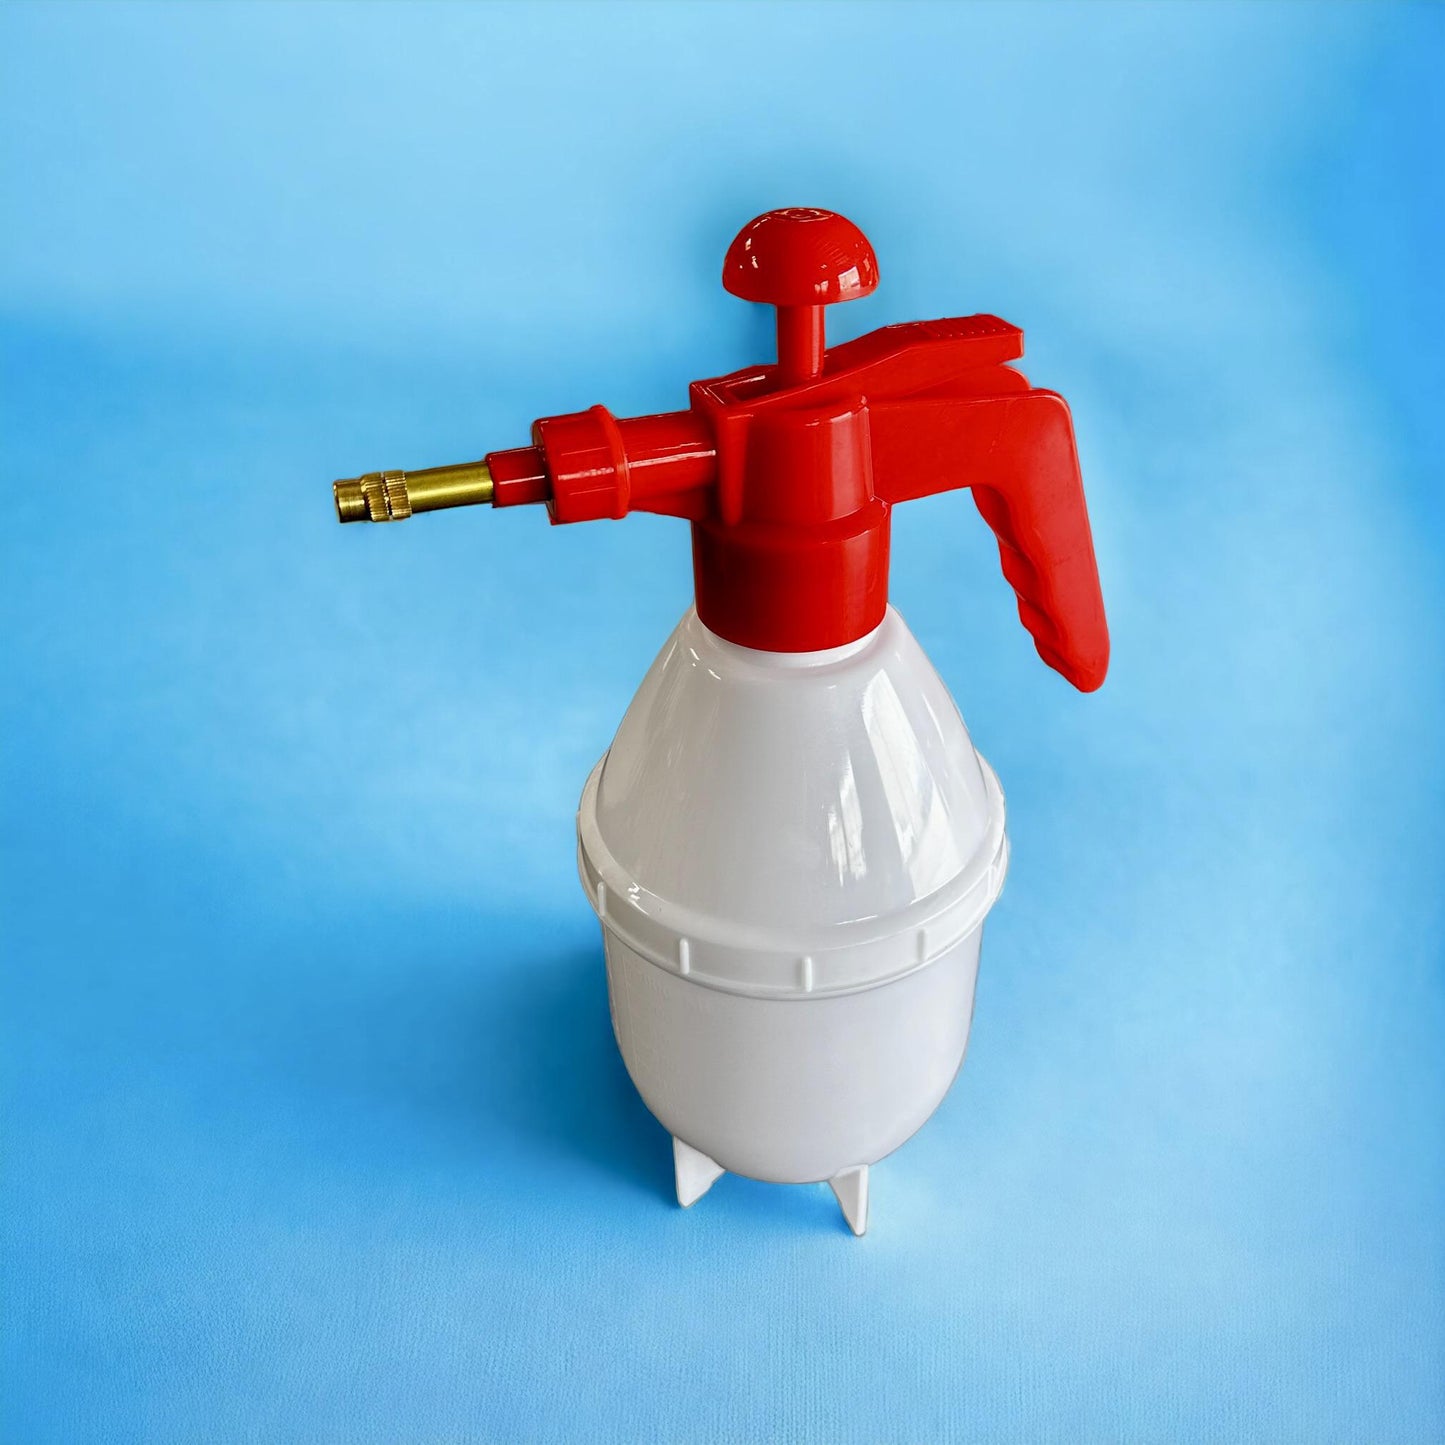 1 Liter Pump Sprayer